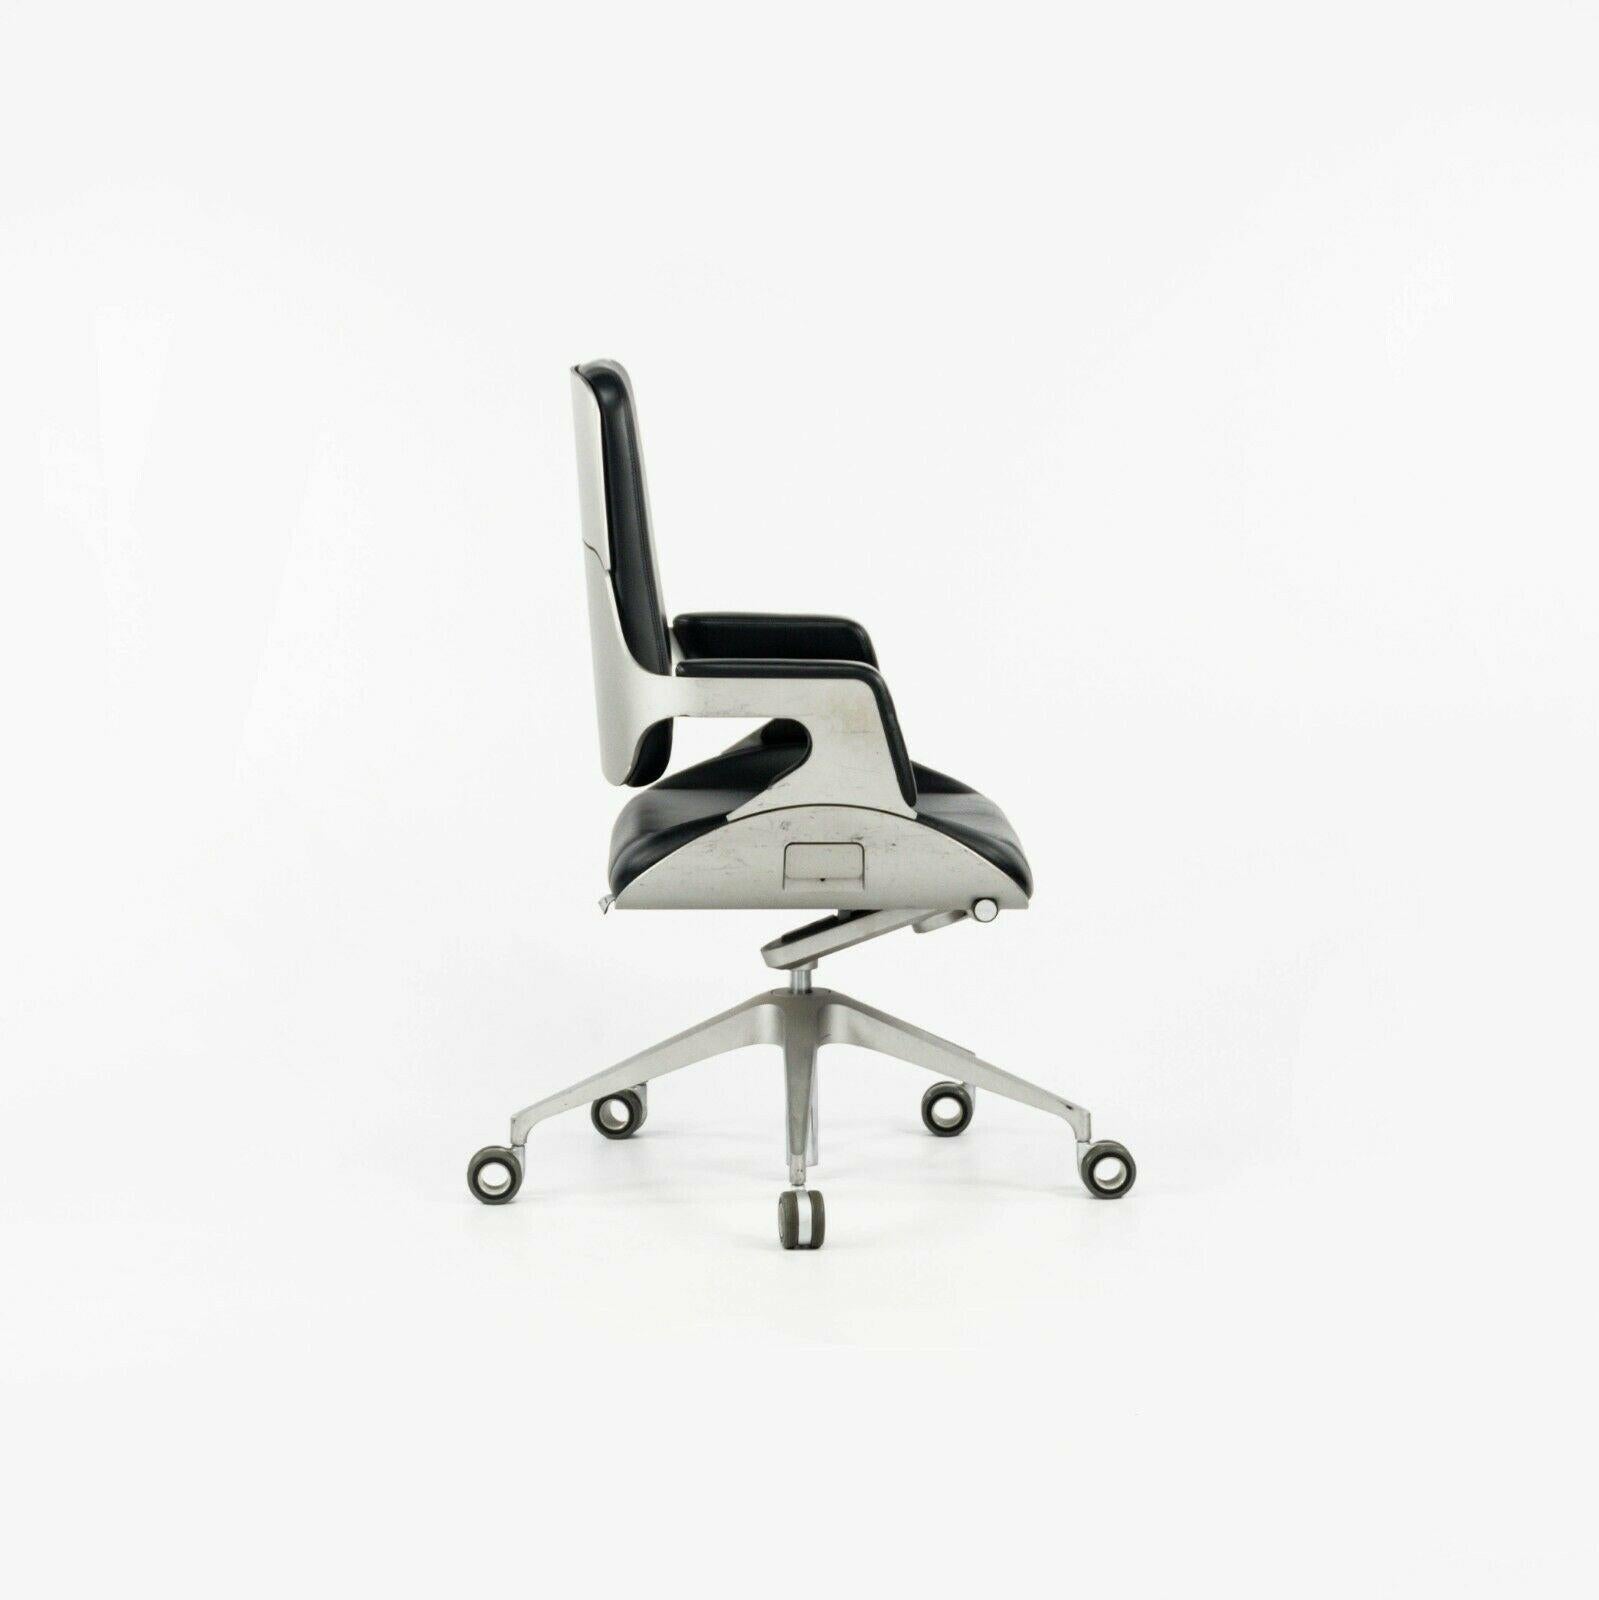 La chaise de bureau Silver 262S de 2008, conçue par Hadi Teherani et produite par Interstuhl en Allemagne, est proposée à la vente en un seul exemplaire (plusieurs chaises sont disponibles, mais le prix indiqué n'est que pour une seule). Il s'agit